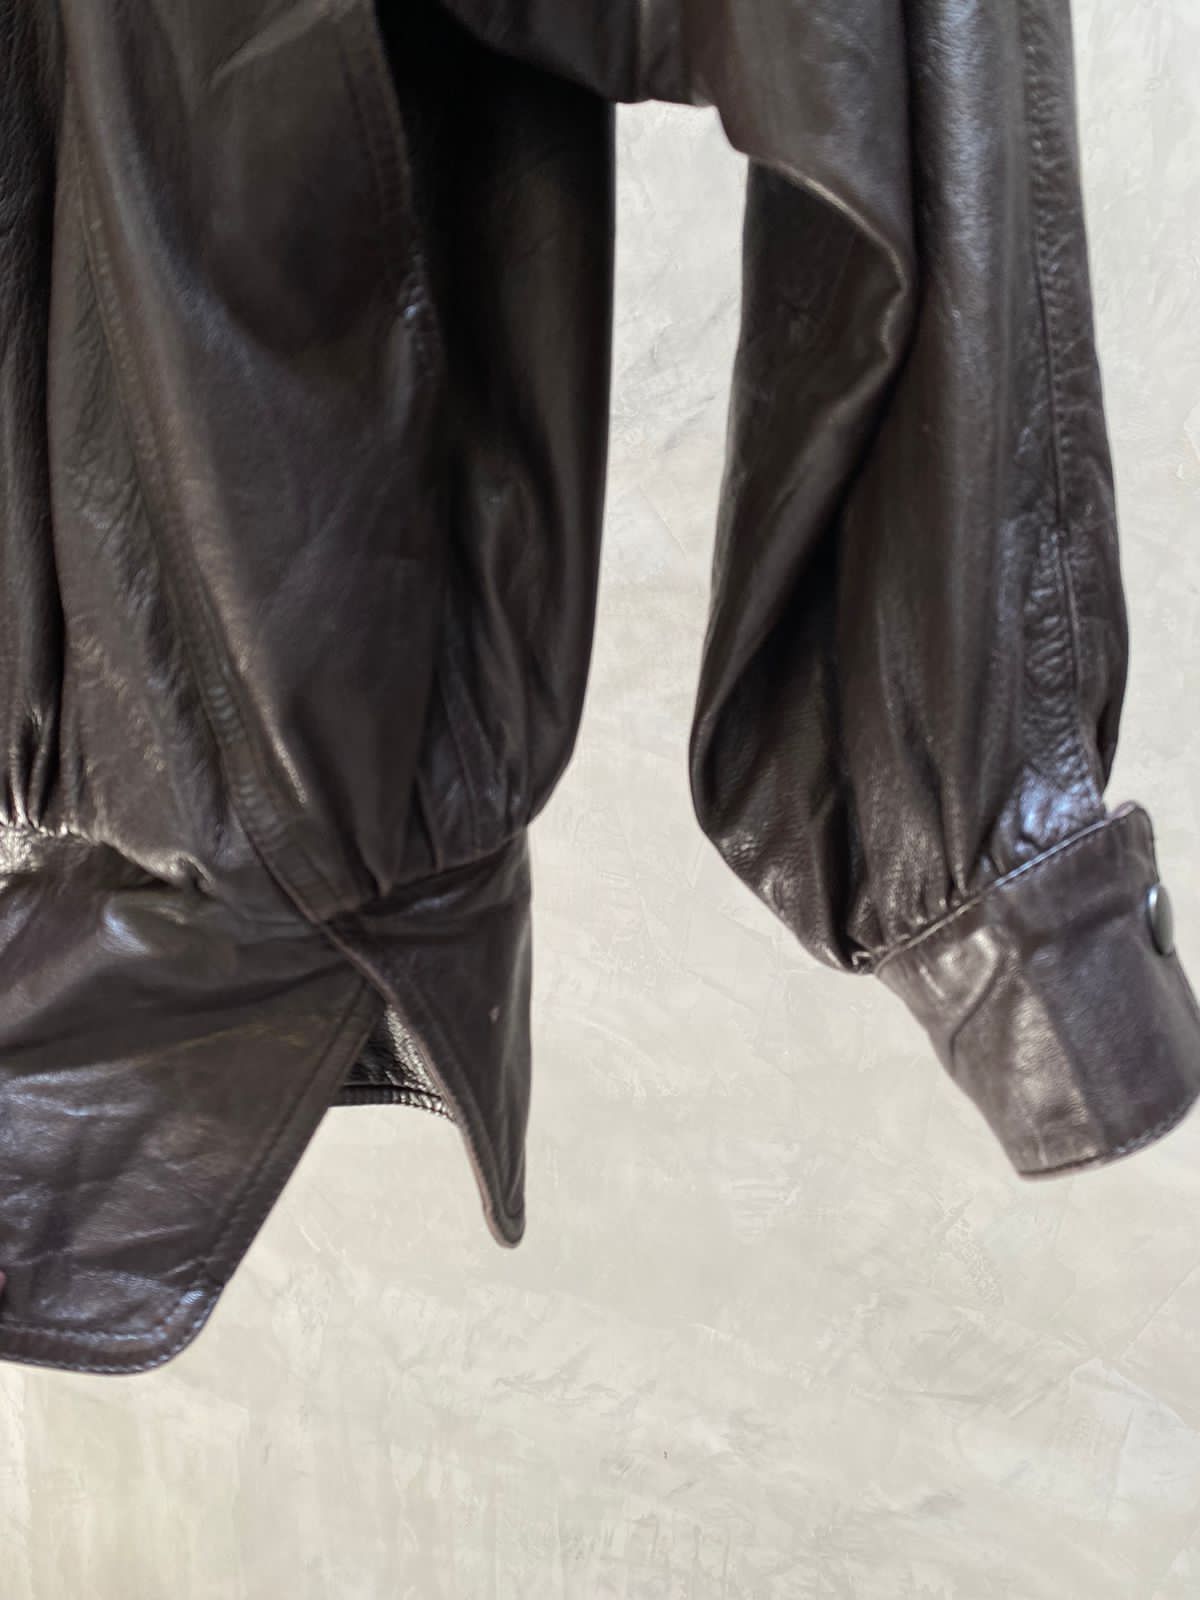 Leather jacket UNISEX 80s Cut